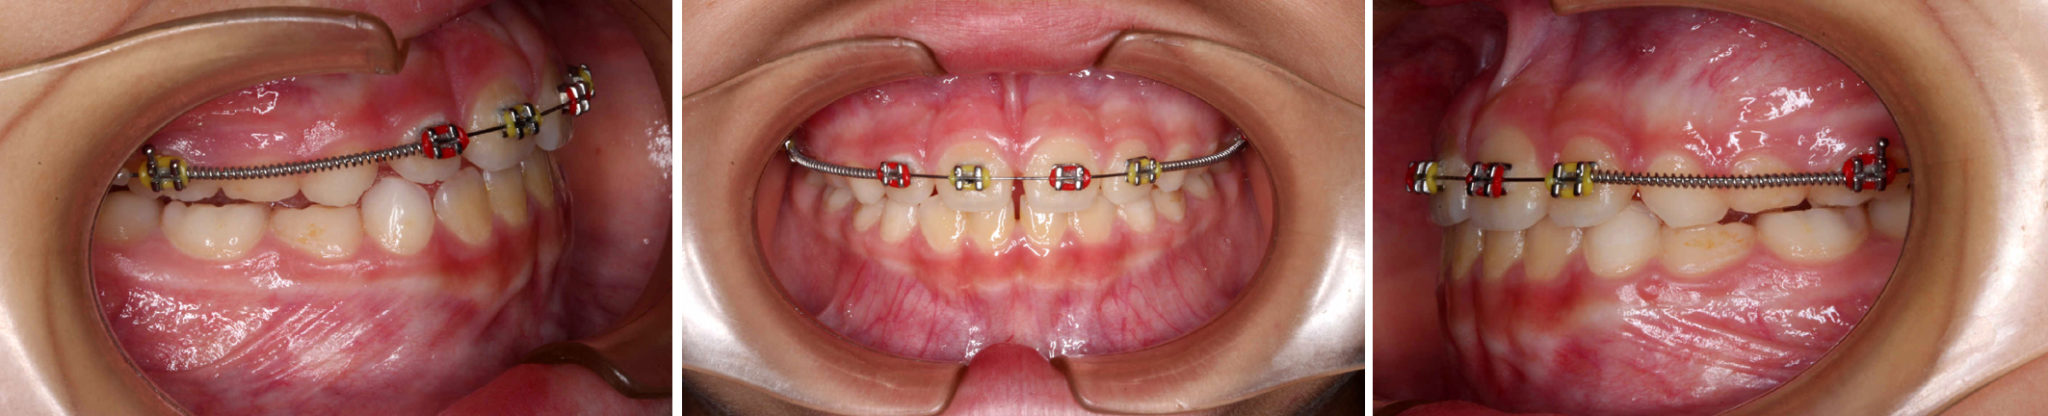 Tratamiento de Ortodoncia Antes y Después - Brackets Ortodoncia